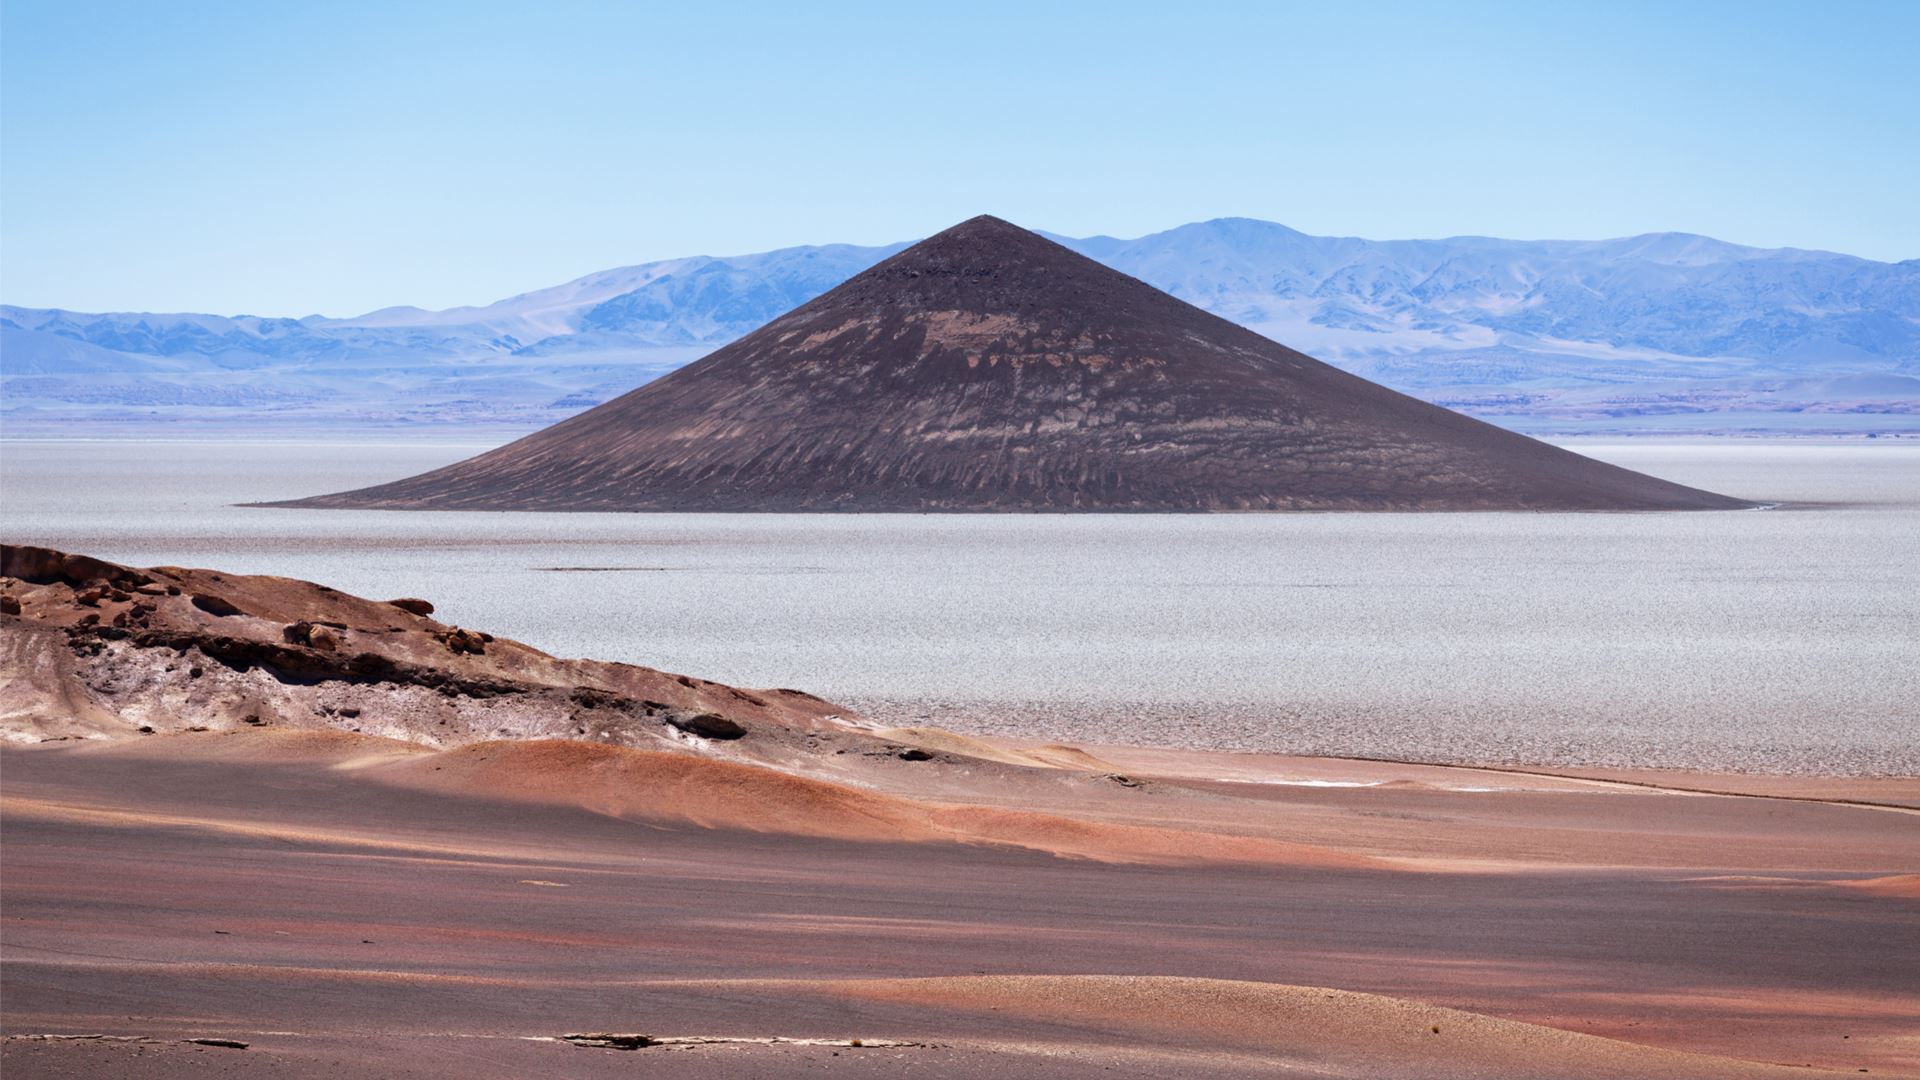 O Cono de Arita: Um lugar misterioso e pouco conhecido em Salta